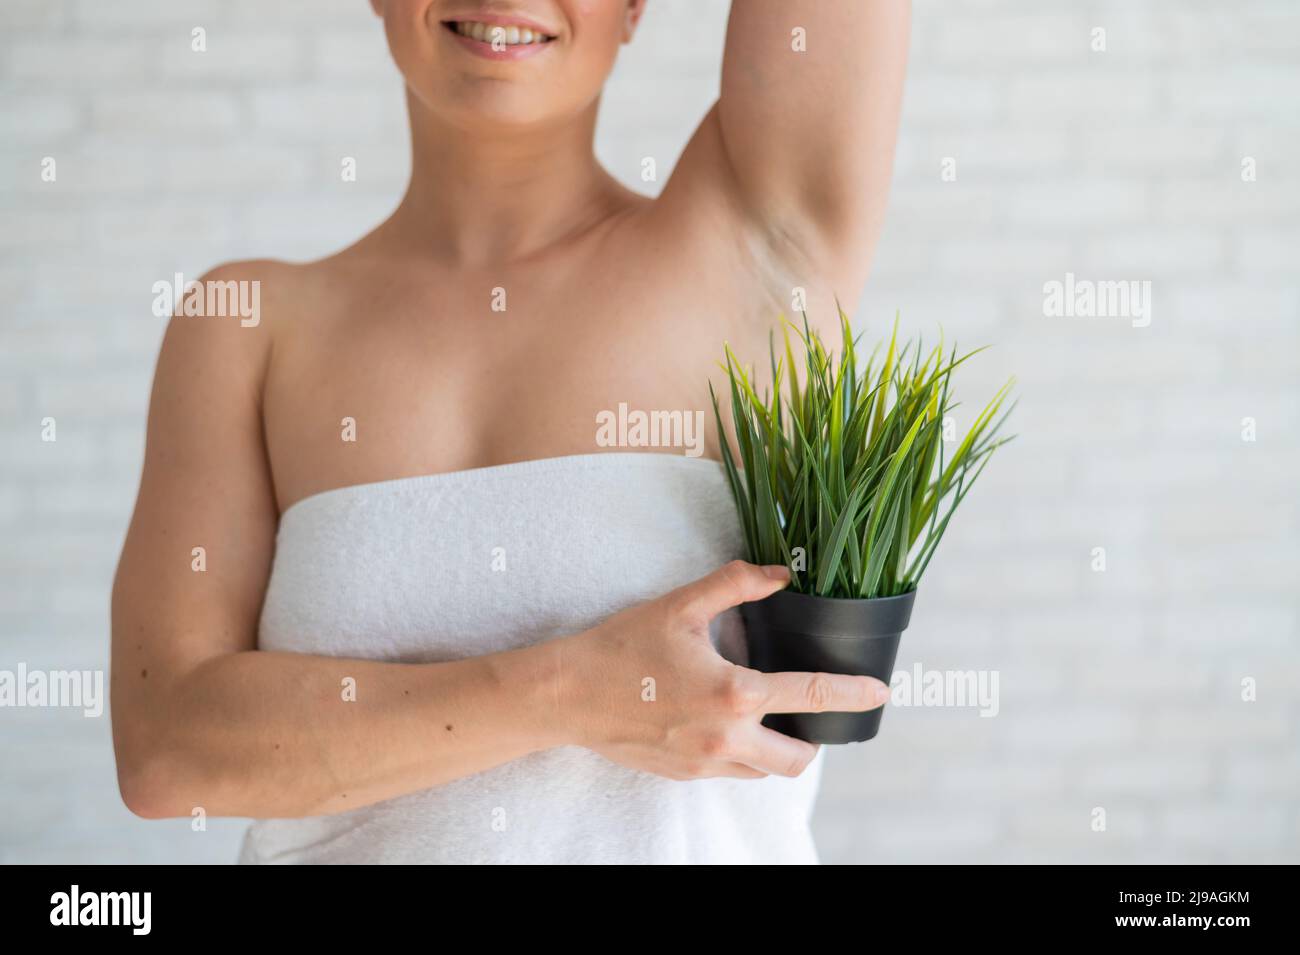 Donna sorridente in un asciugamano bianco tiene una pentola con una pianta. Ragazza irriconoscibile con l'aiuto di cespugli verdi imita la vegetazione dei capelli delle ascelle Foto Stock